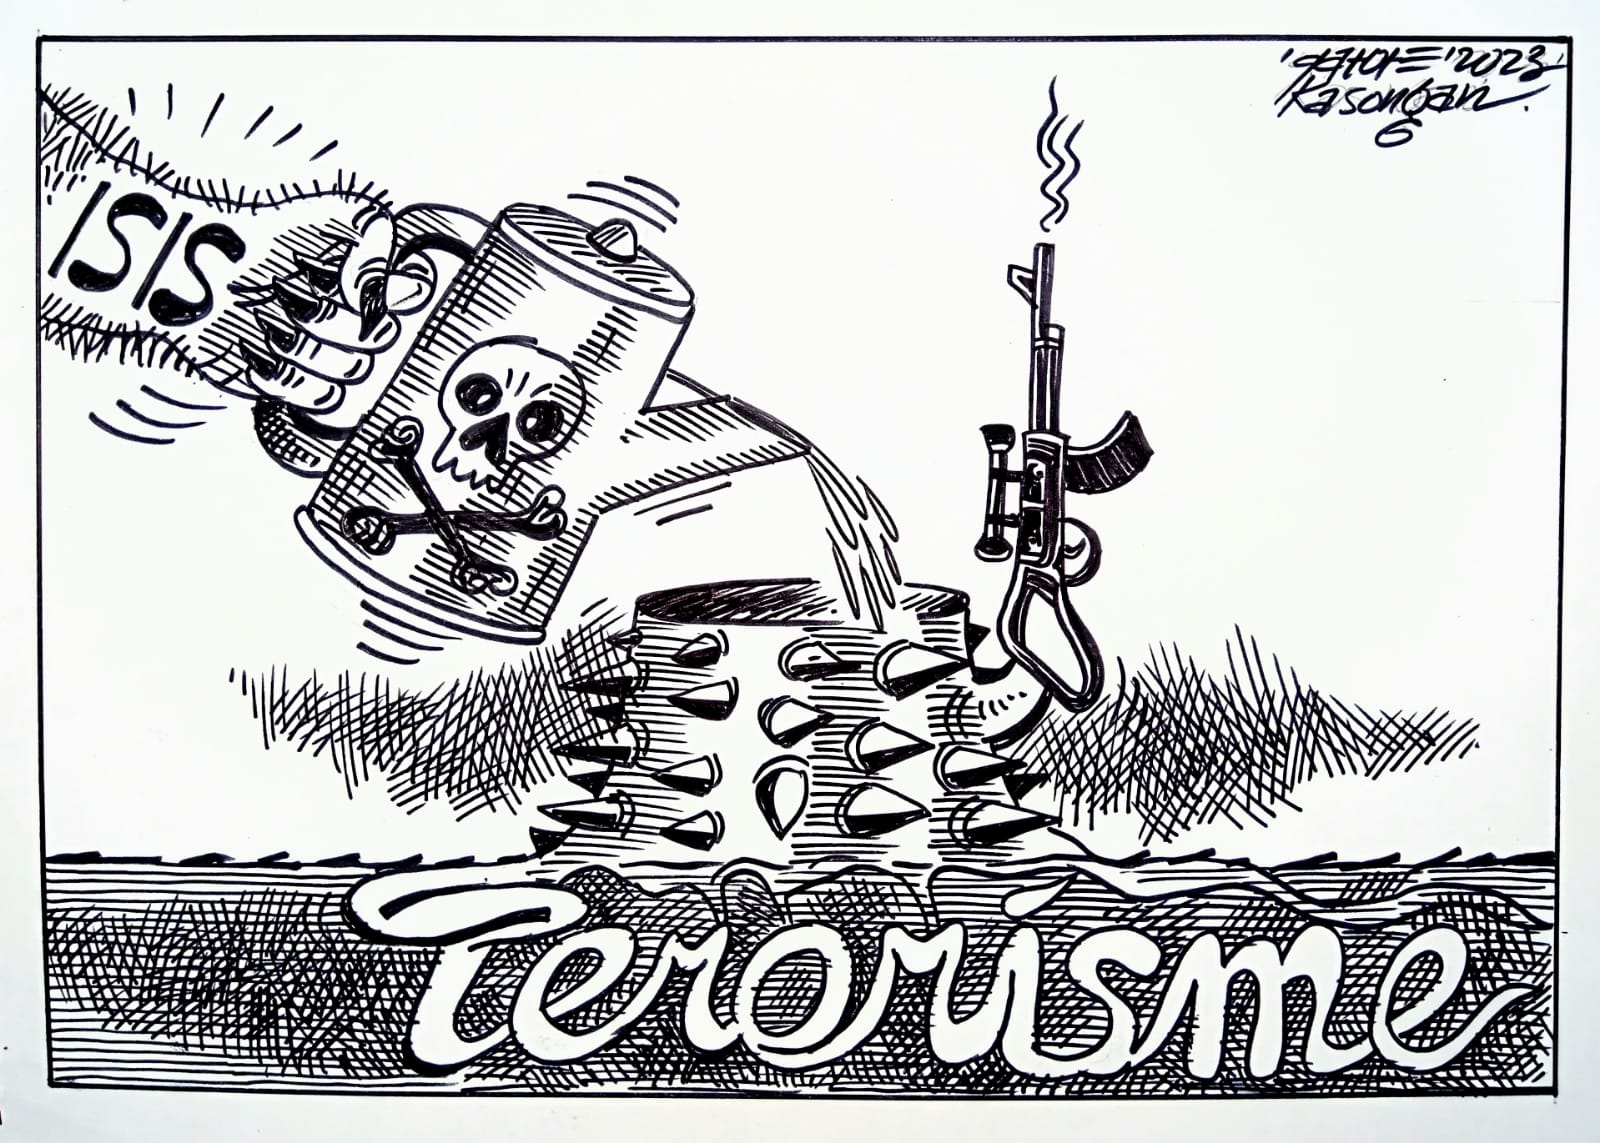 Terorisme, Waspadalah-waspadalah